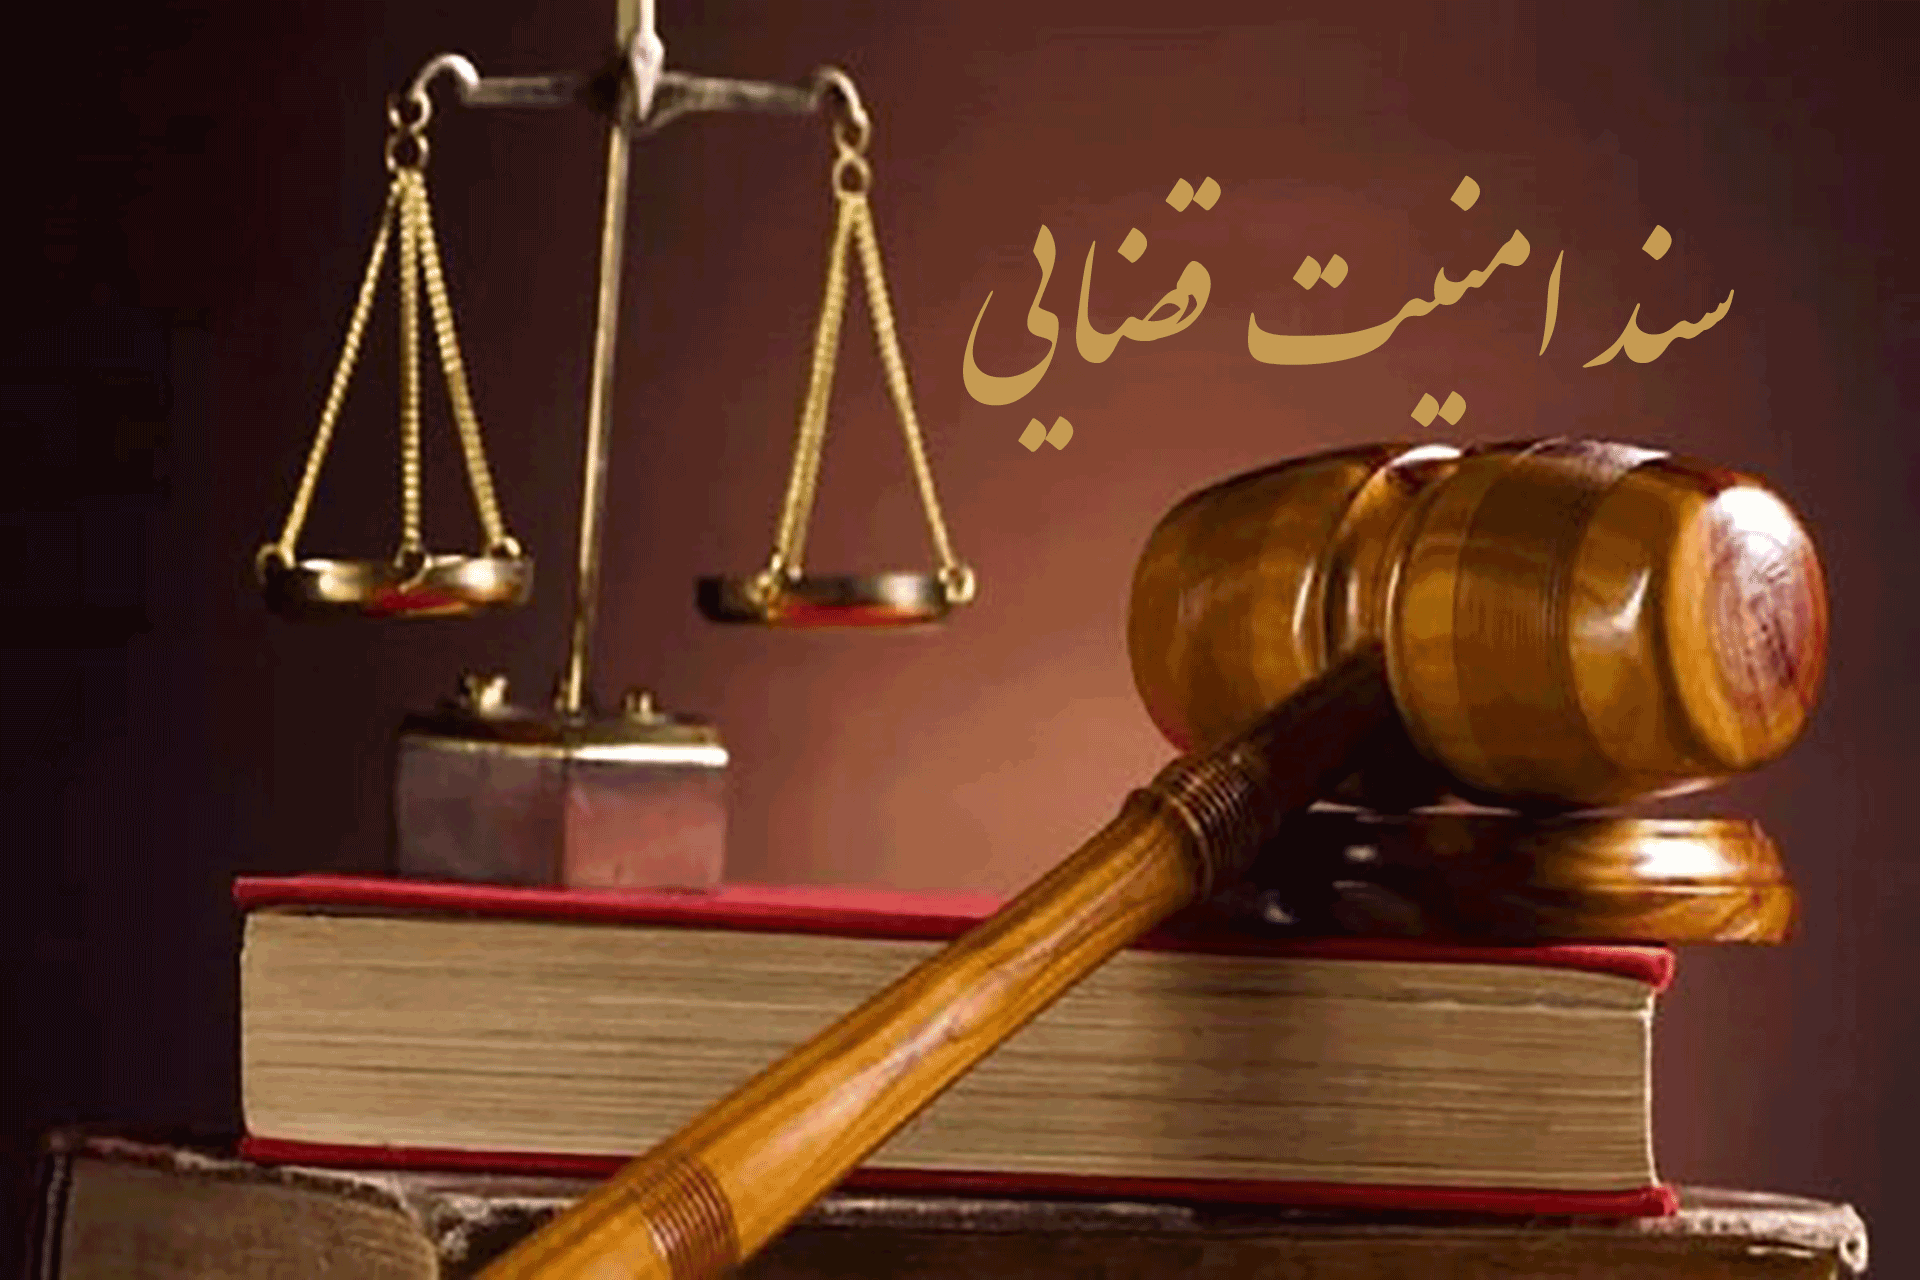 آل محمد: قطعیت اجرایی سند امنیت قضایی اعتماد عمومی را جلب می کند